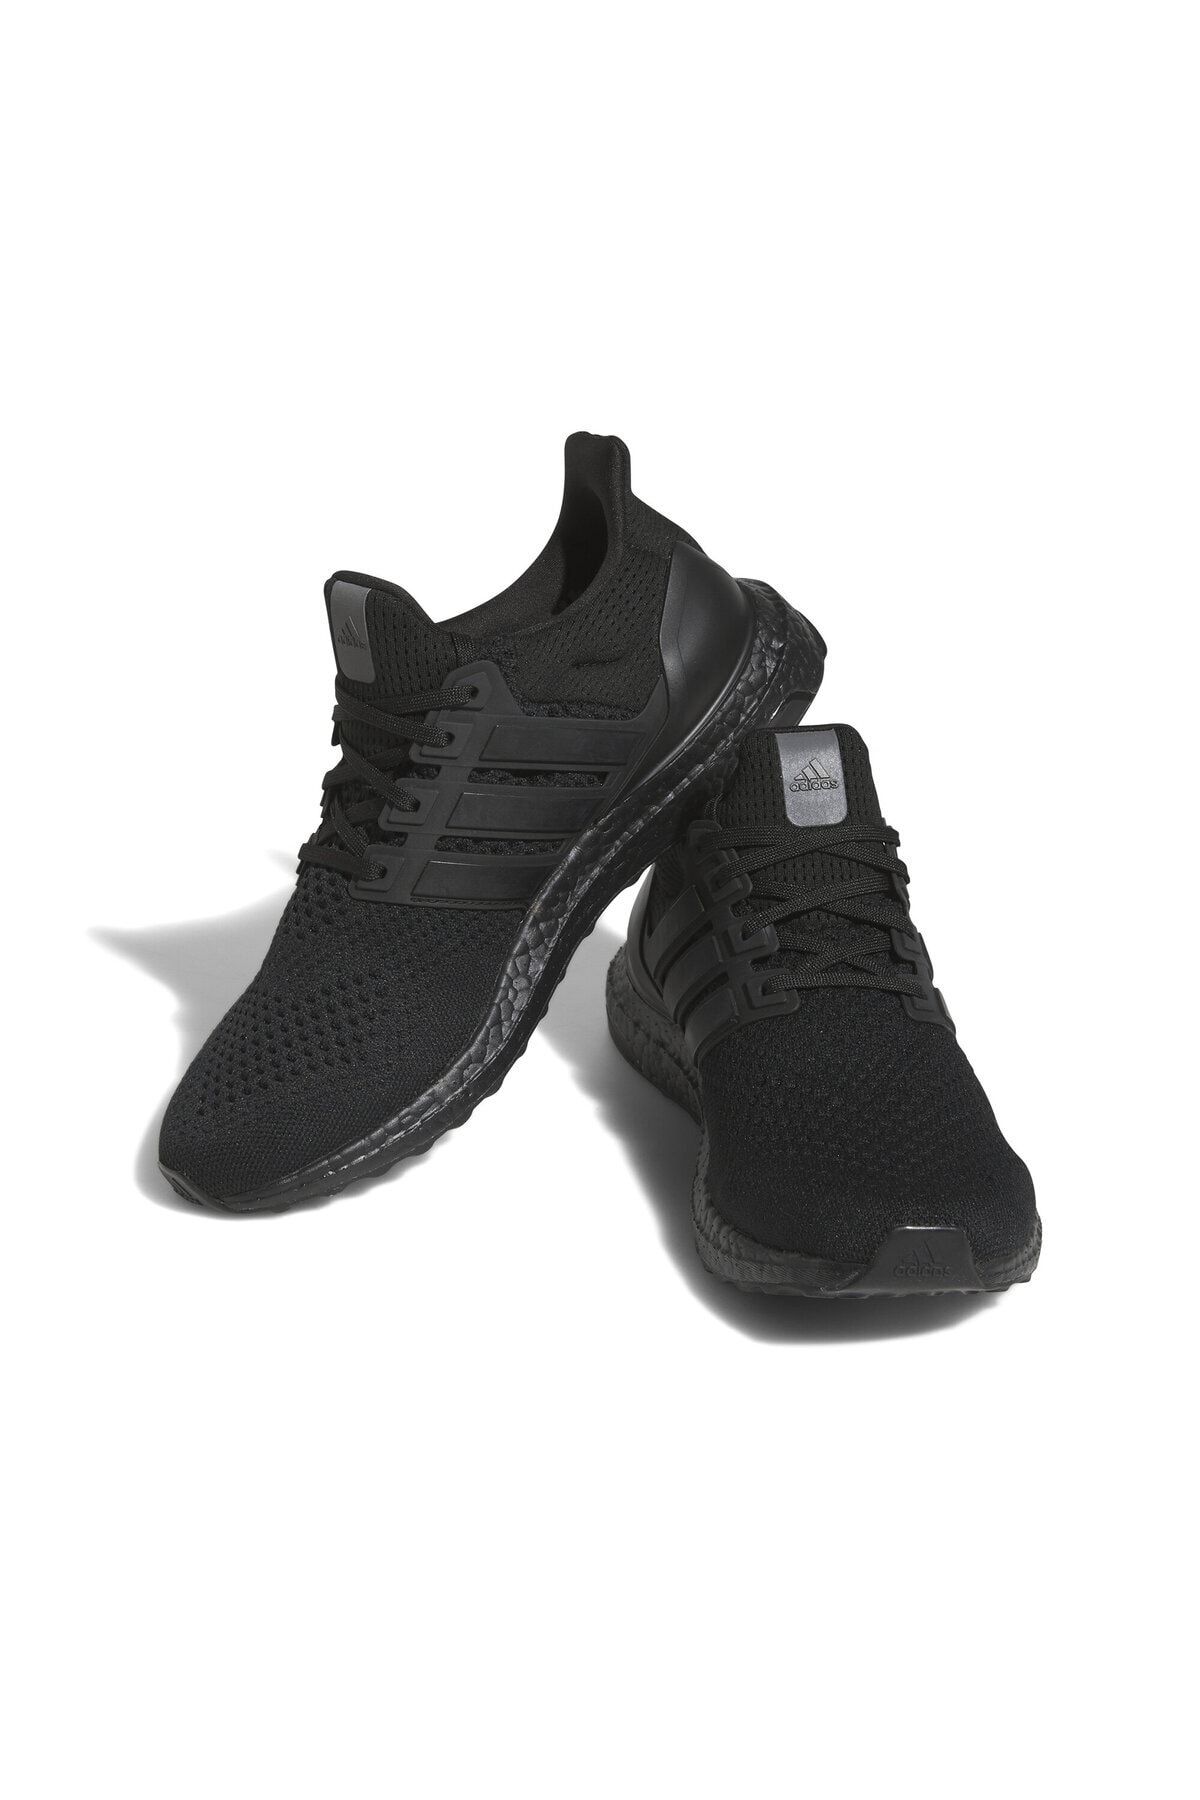 adidas Ultraboost 1.0 Erkek Koşu Ayakkabısı HQ4199 Siyah